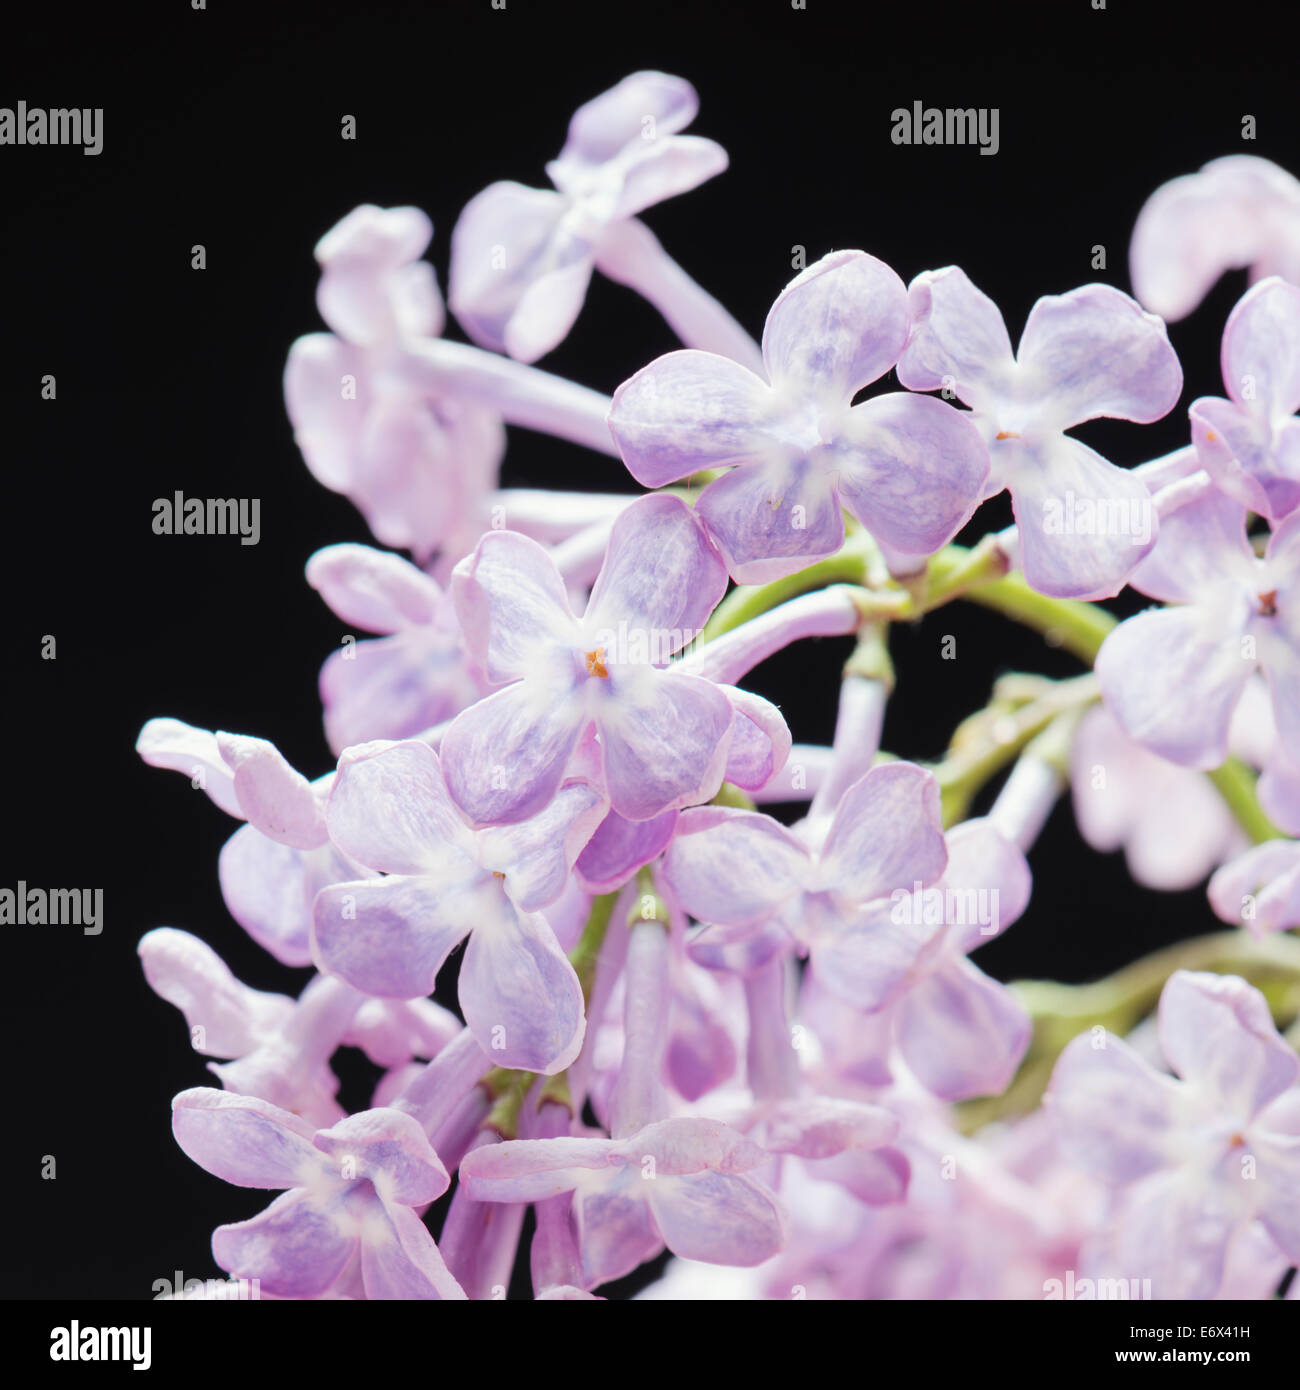 Close up of lilac flowers (Syringa vulgaris) Stock Photo